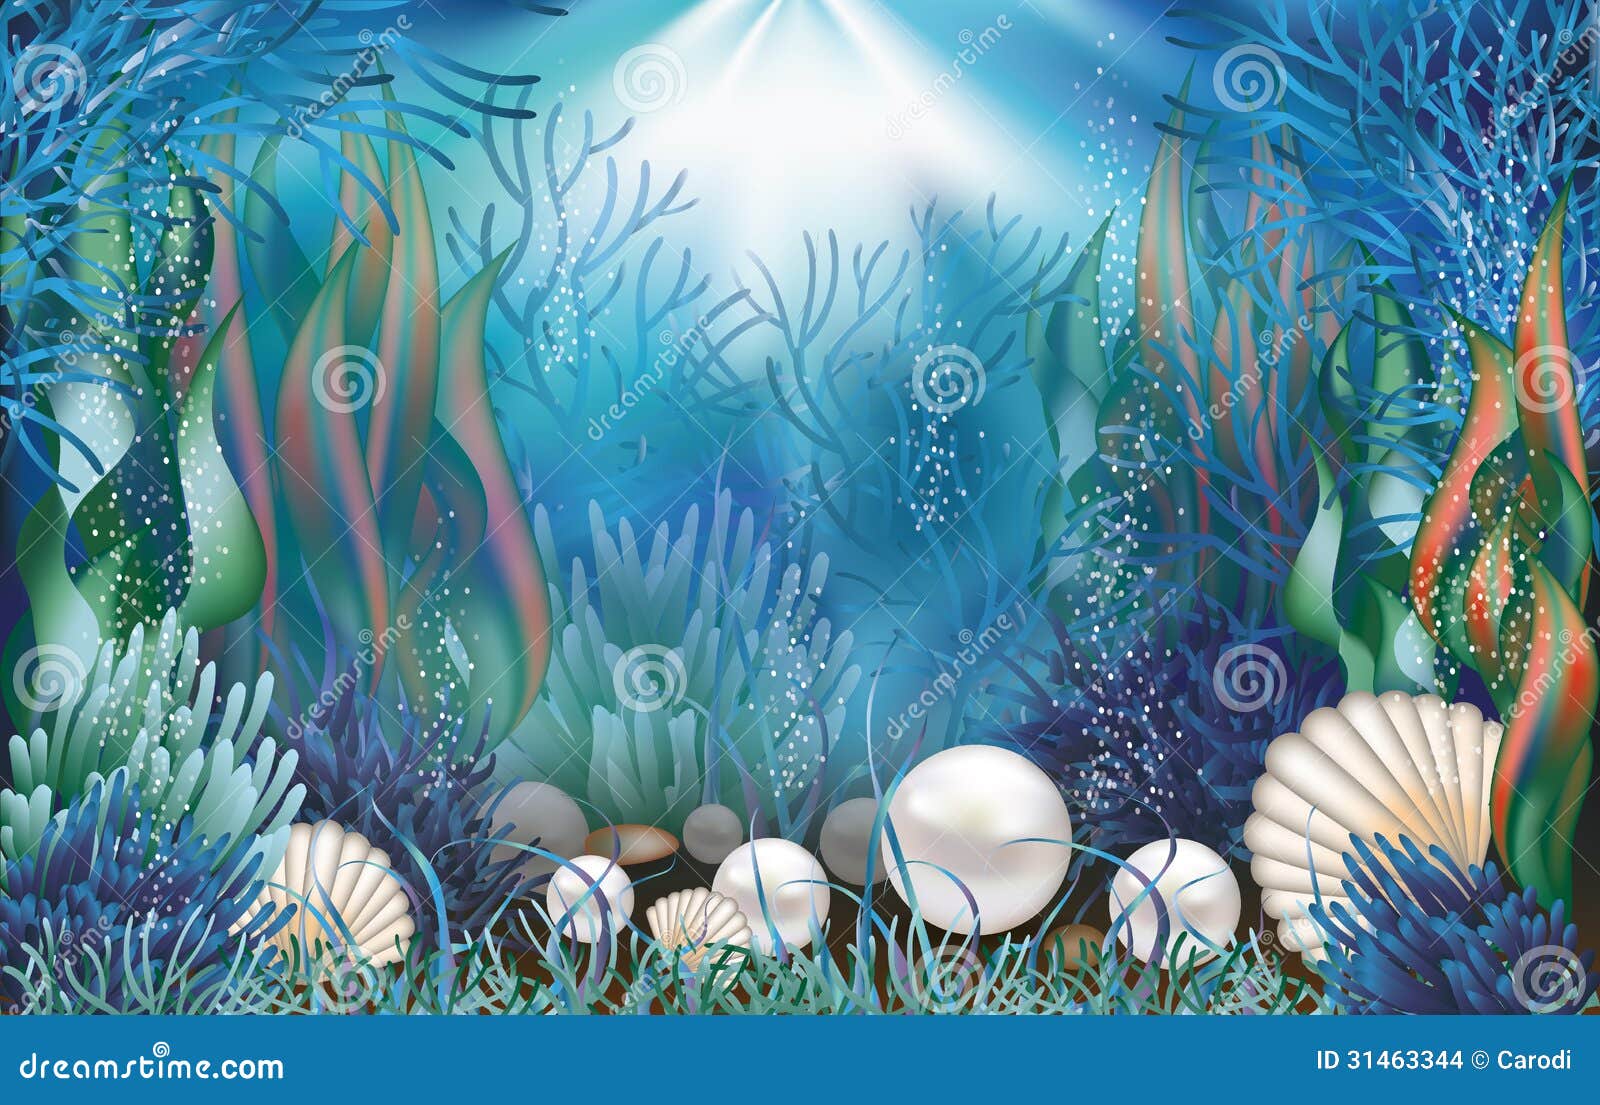 Underwater Pearls